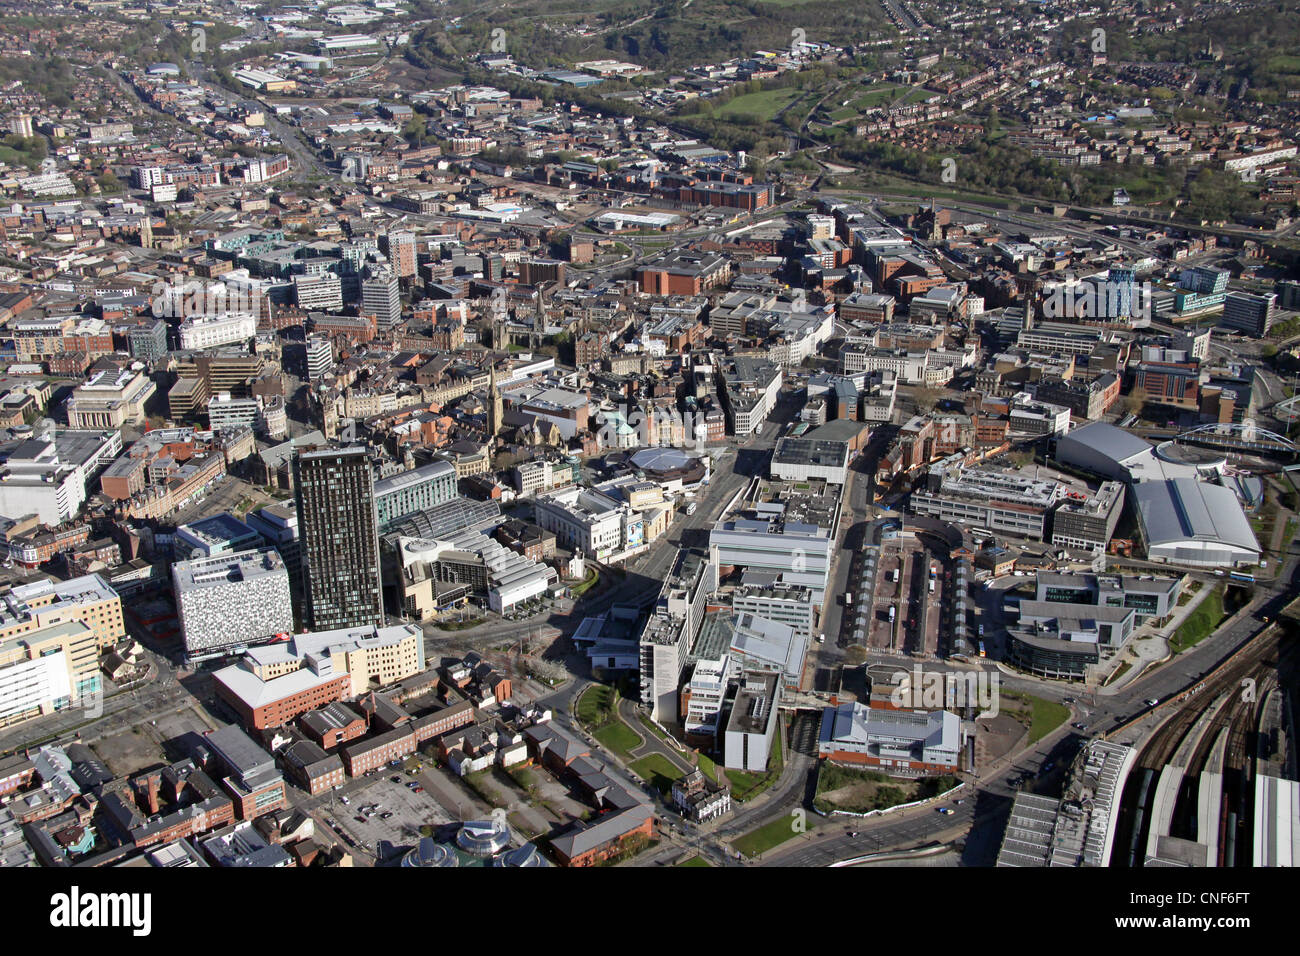 Vista aerea del centro di Sheffield, con gli edifici della Sheffield Hallam University prominenti e la stazione appena fuori in basso a destra Foto Stock